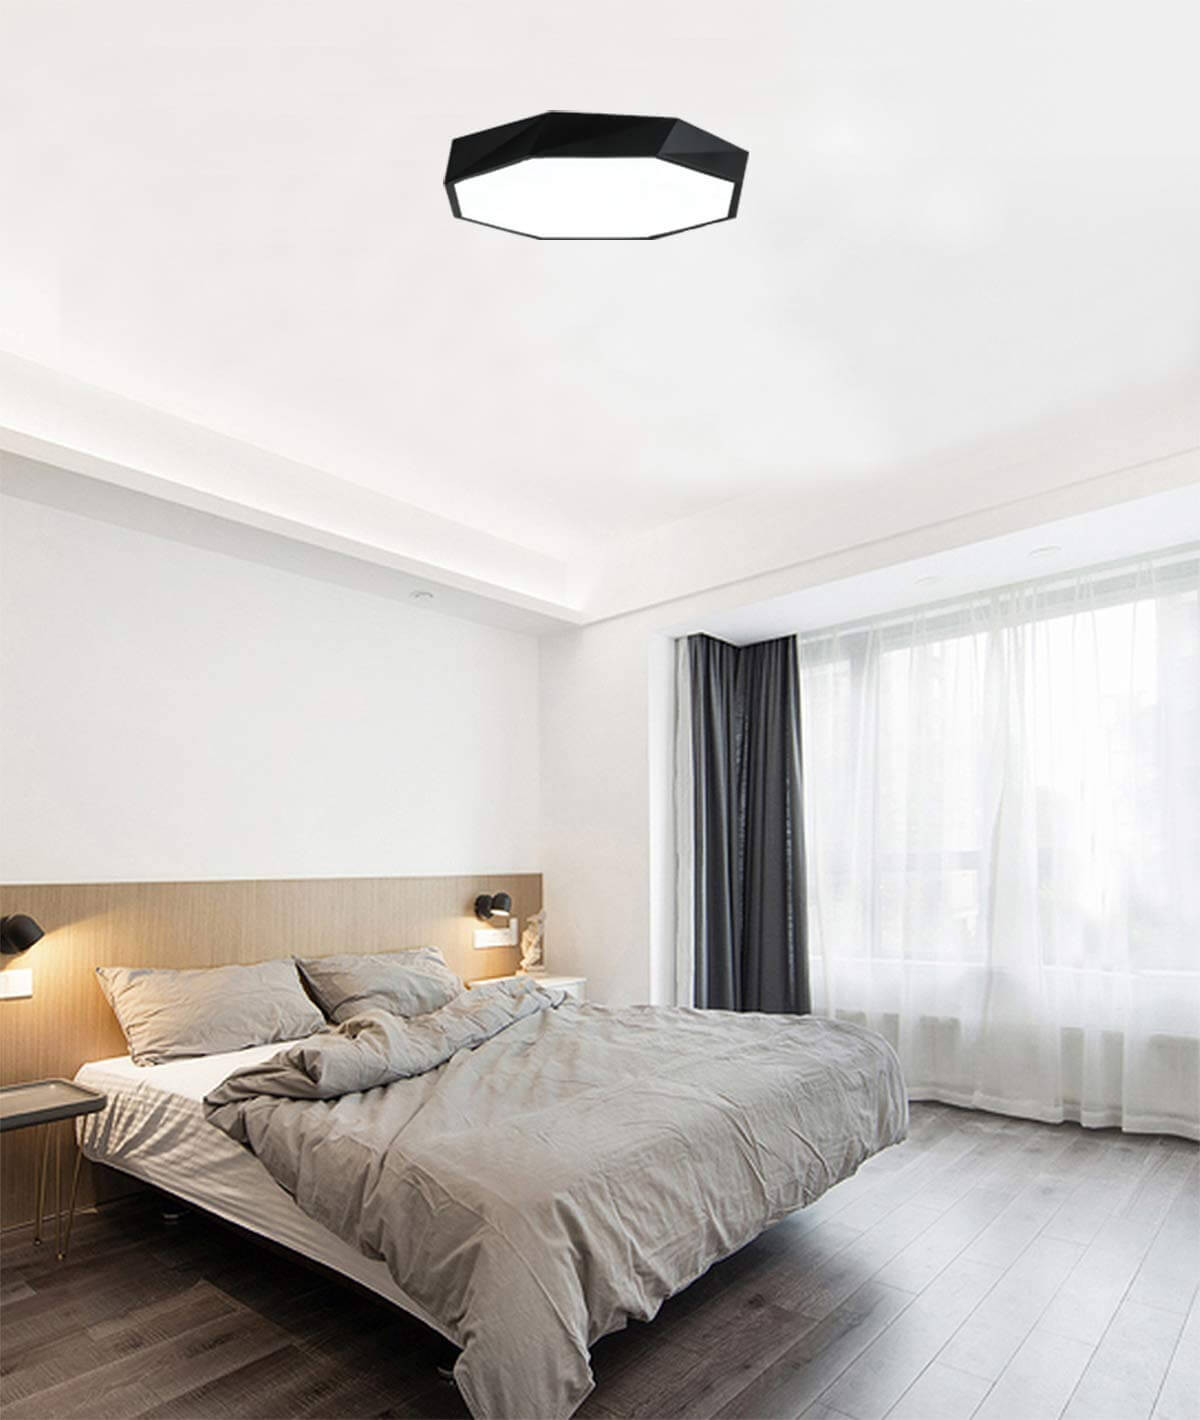 Cool Bedroom Lights
 28 Best Bedroom Ceiling Lights to Brighten Up Your Space